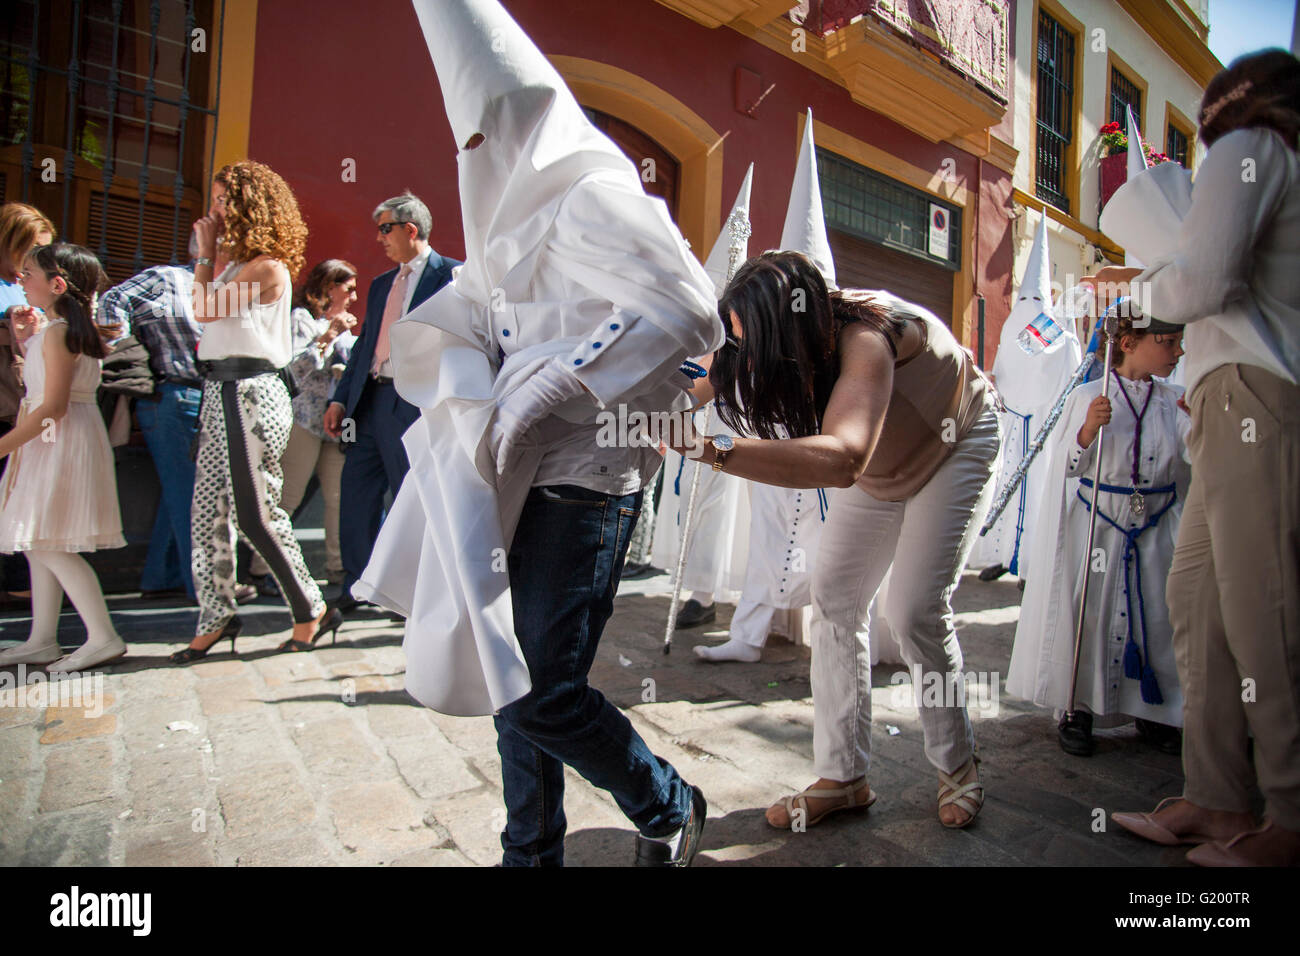 Ein Verwandter von einem "Nazareno" der Bruderschaft namens "La Paz" ordnen Sie ihre Kleidung während der Parade zur Kathedrale am Sonntag der Palmen, genannt Tag Domingo de Ramos in spanischer Sprache. Sevilla, Spanien, 13. April 2014 Stockfoto